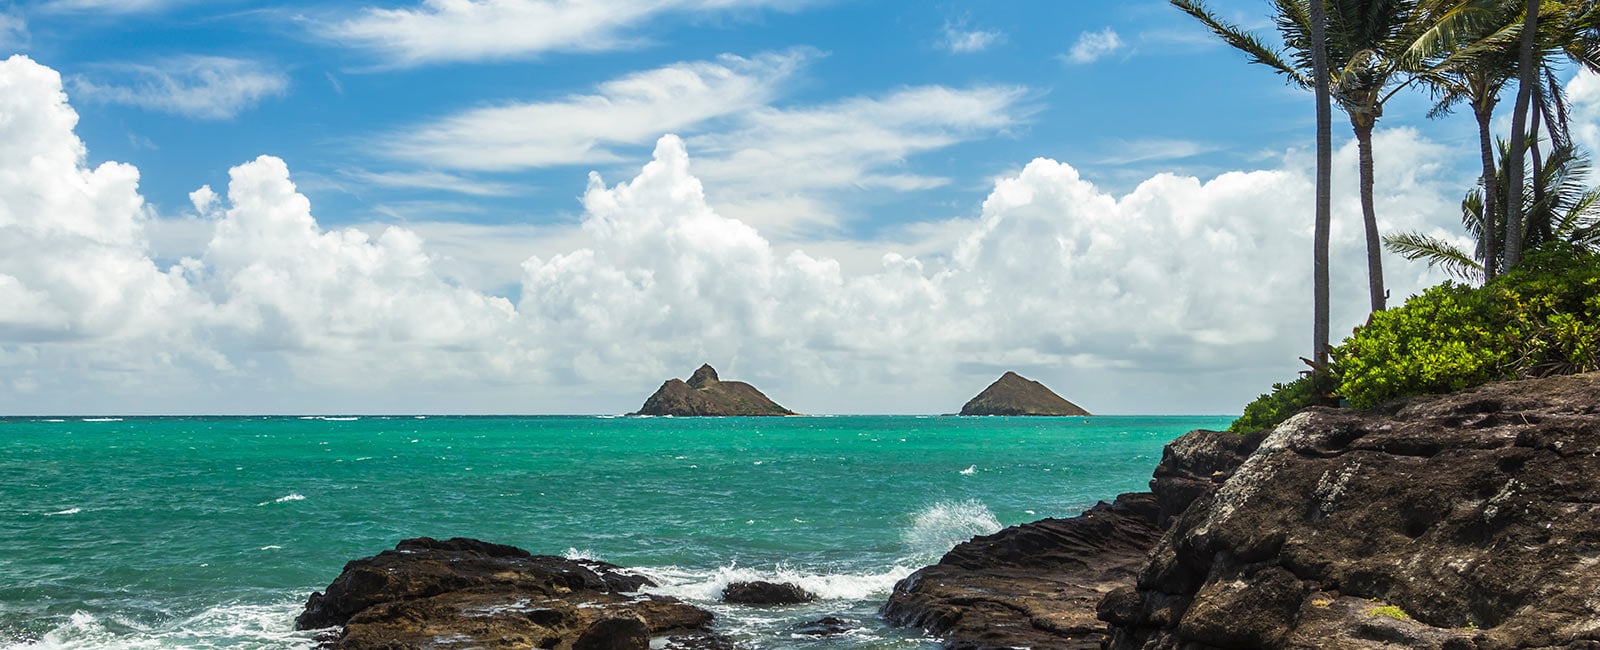 Enjoy a Hawaiian beach vacation with Hilton Grand Vacations